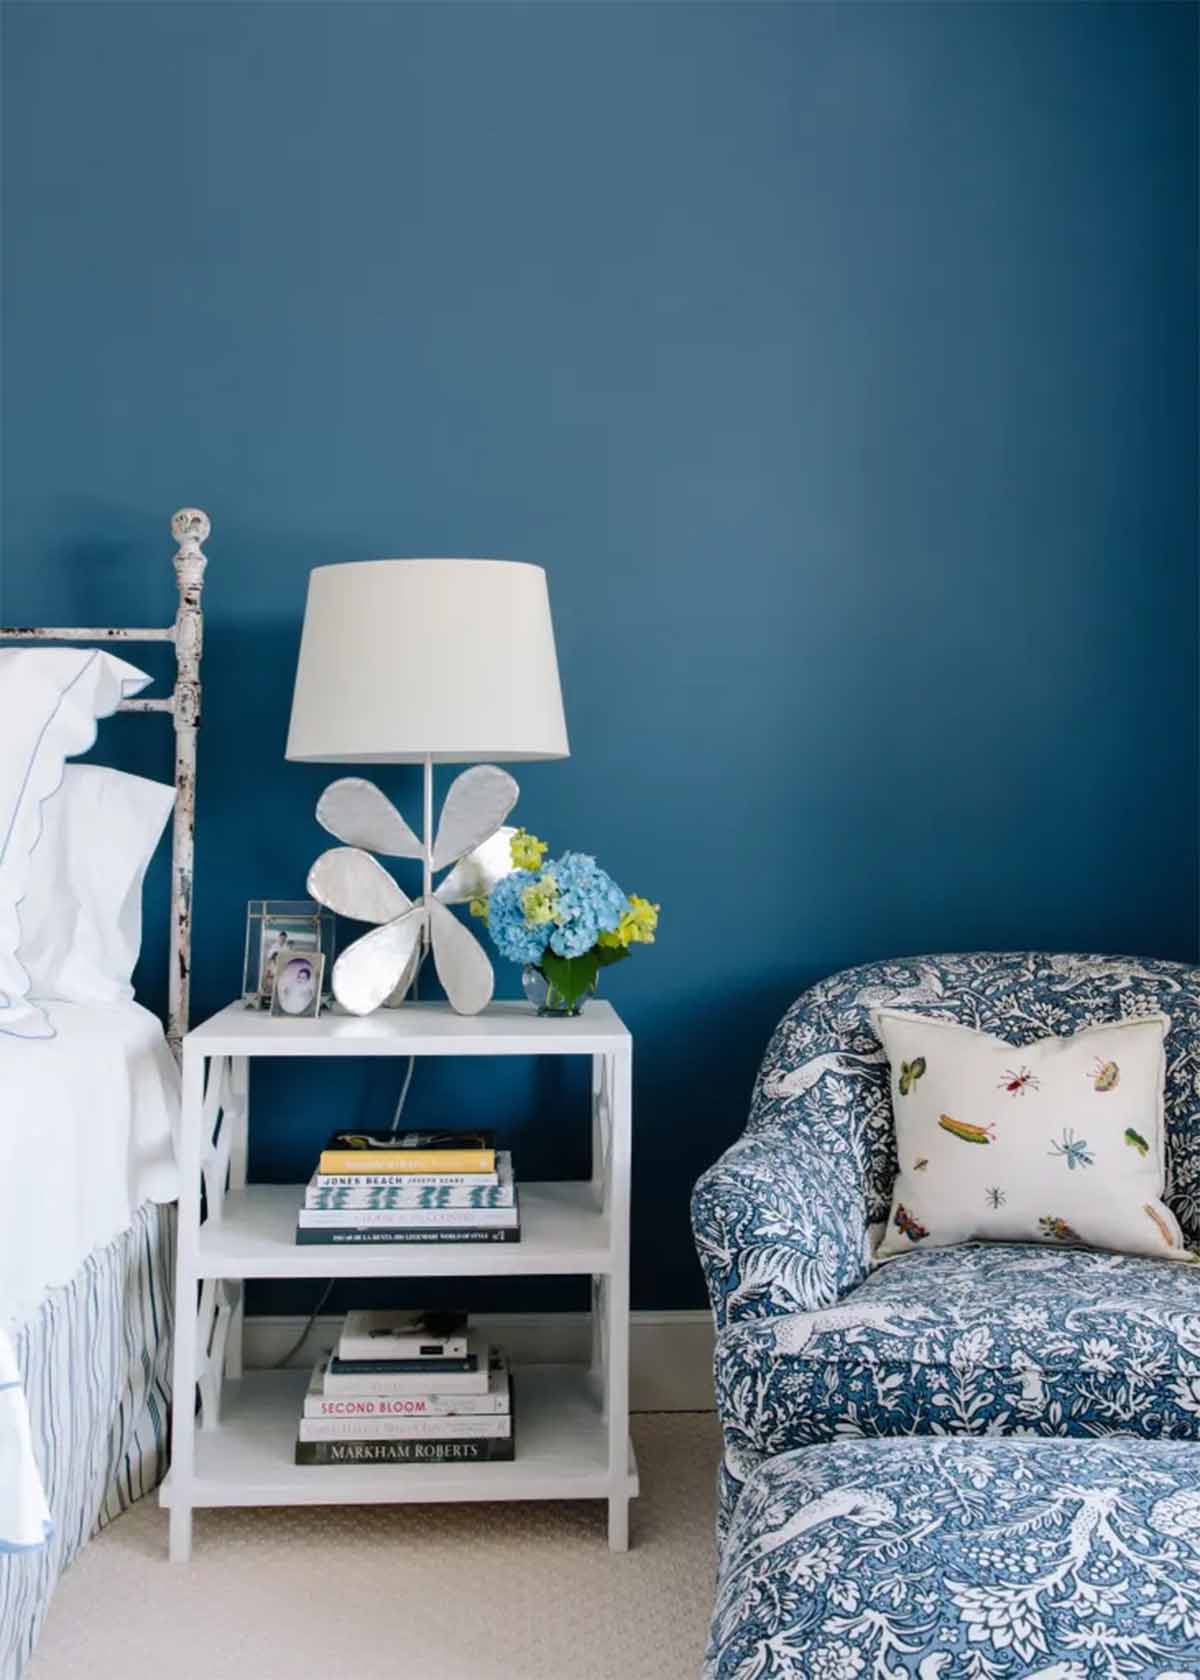 پارچه مبل آبی سفید با پترن طبیعت و پرندگان در اتاق خواب آبی